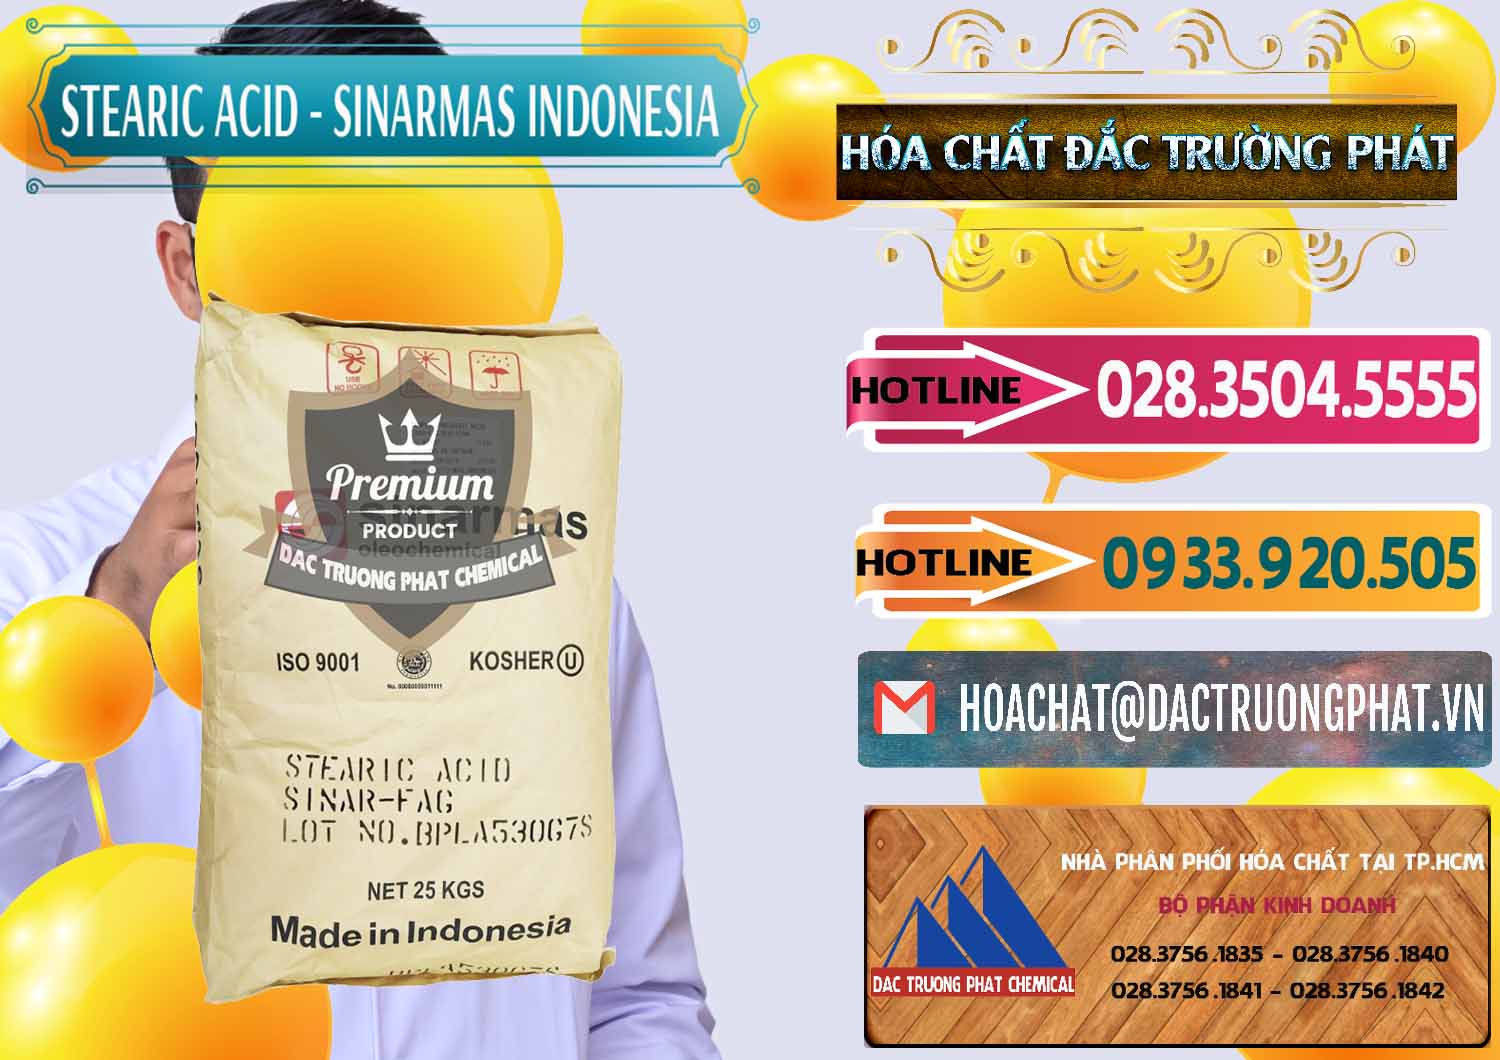 Cty bán ( cung cấp ) Axit Stearic - Stearic Acid Sinarmas Indonesia - 0389 - Chuyên cung cấp ( nhập khẩu ) hóa chất tại TP.HCM - dactruongphat.vn